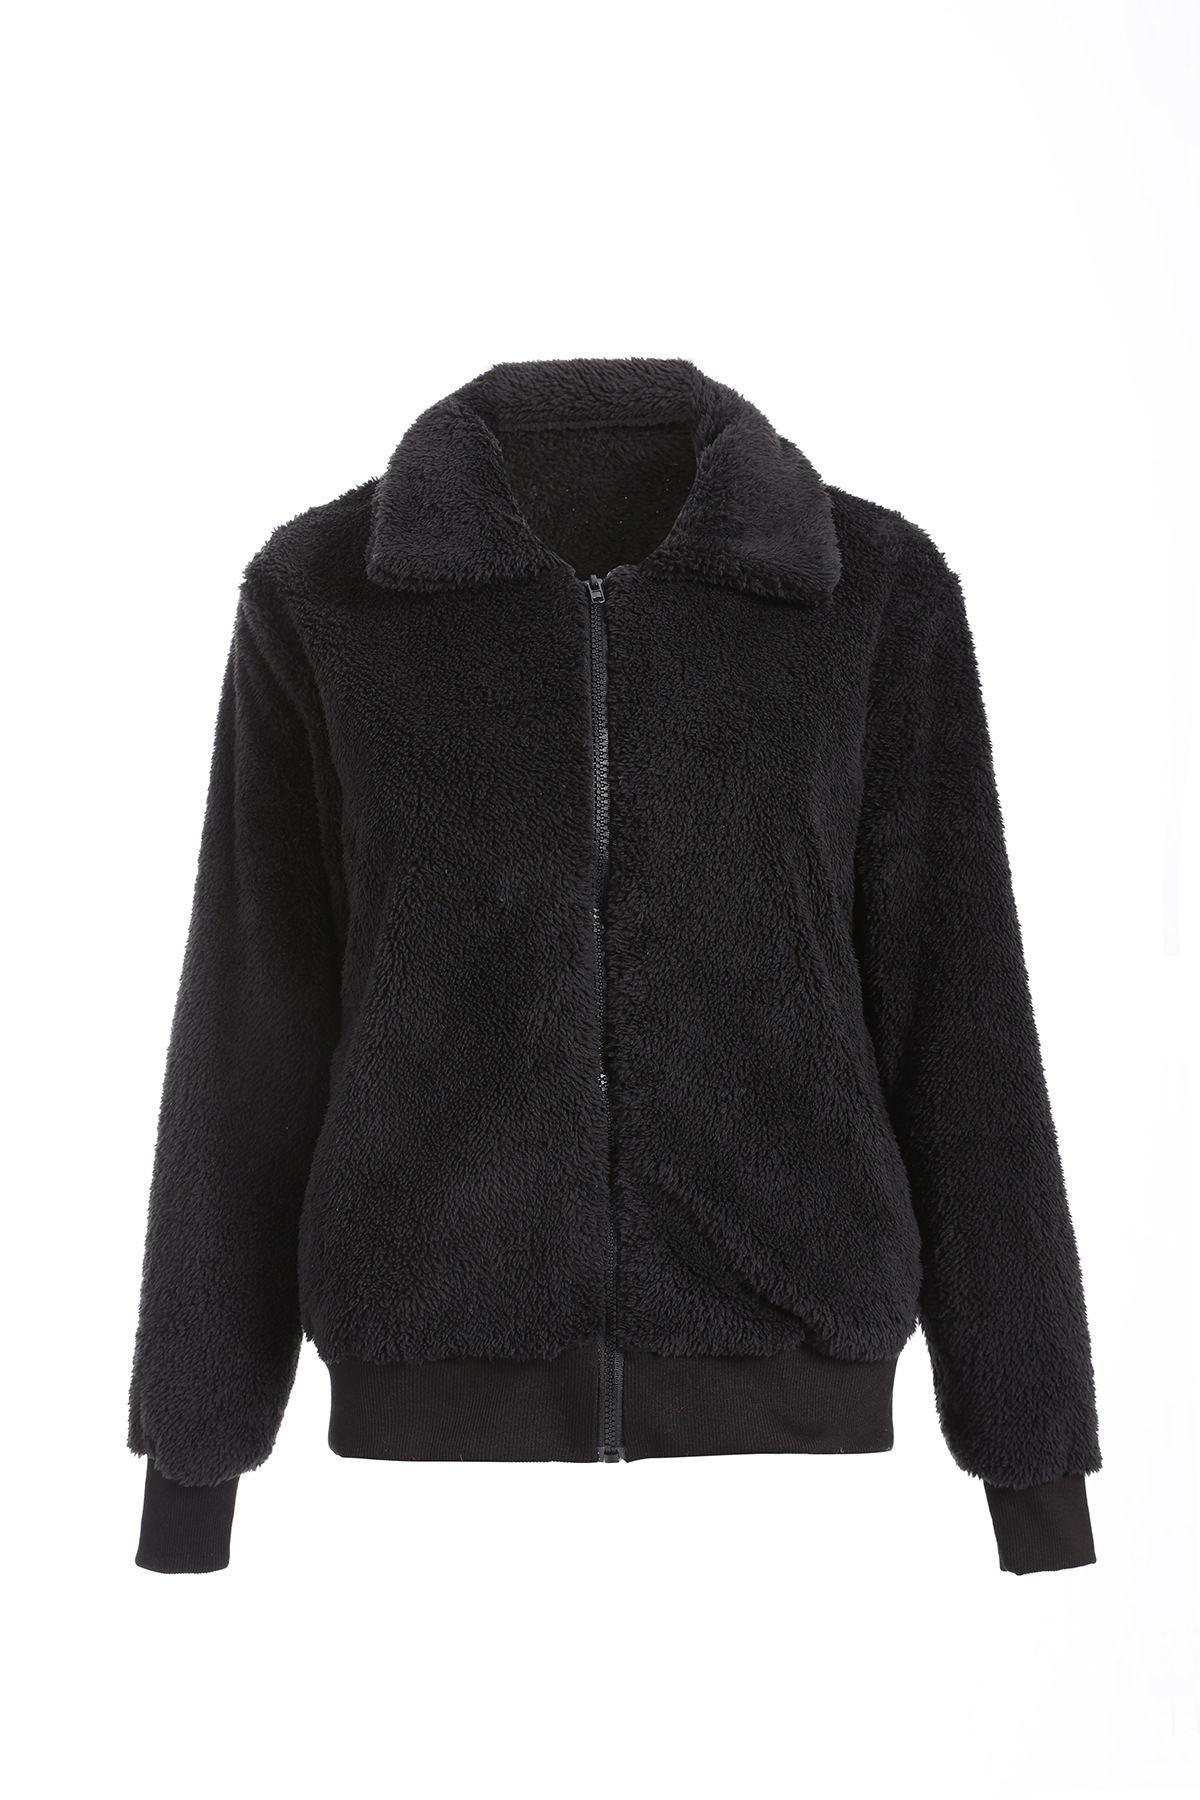 Faux Fur Coat Women Autumn Winter Fluffy Teddy Jacket Coat Plus Size Long Sleeve Outerwear Turn Down Short Coat Female